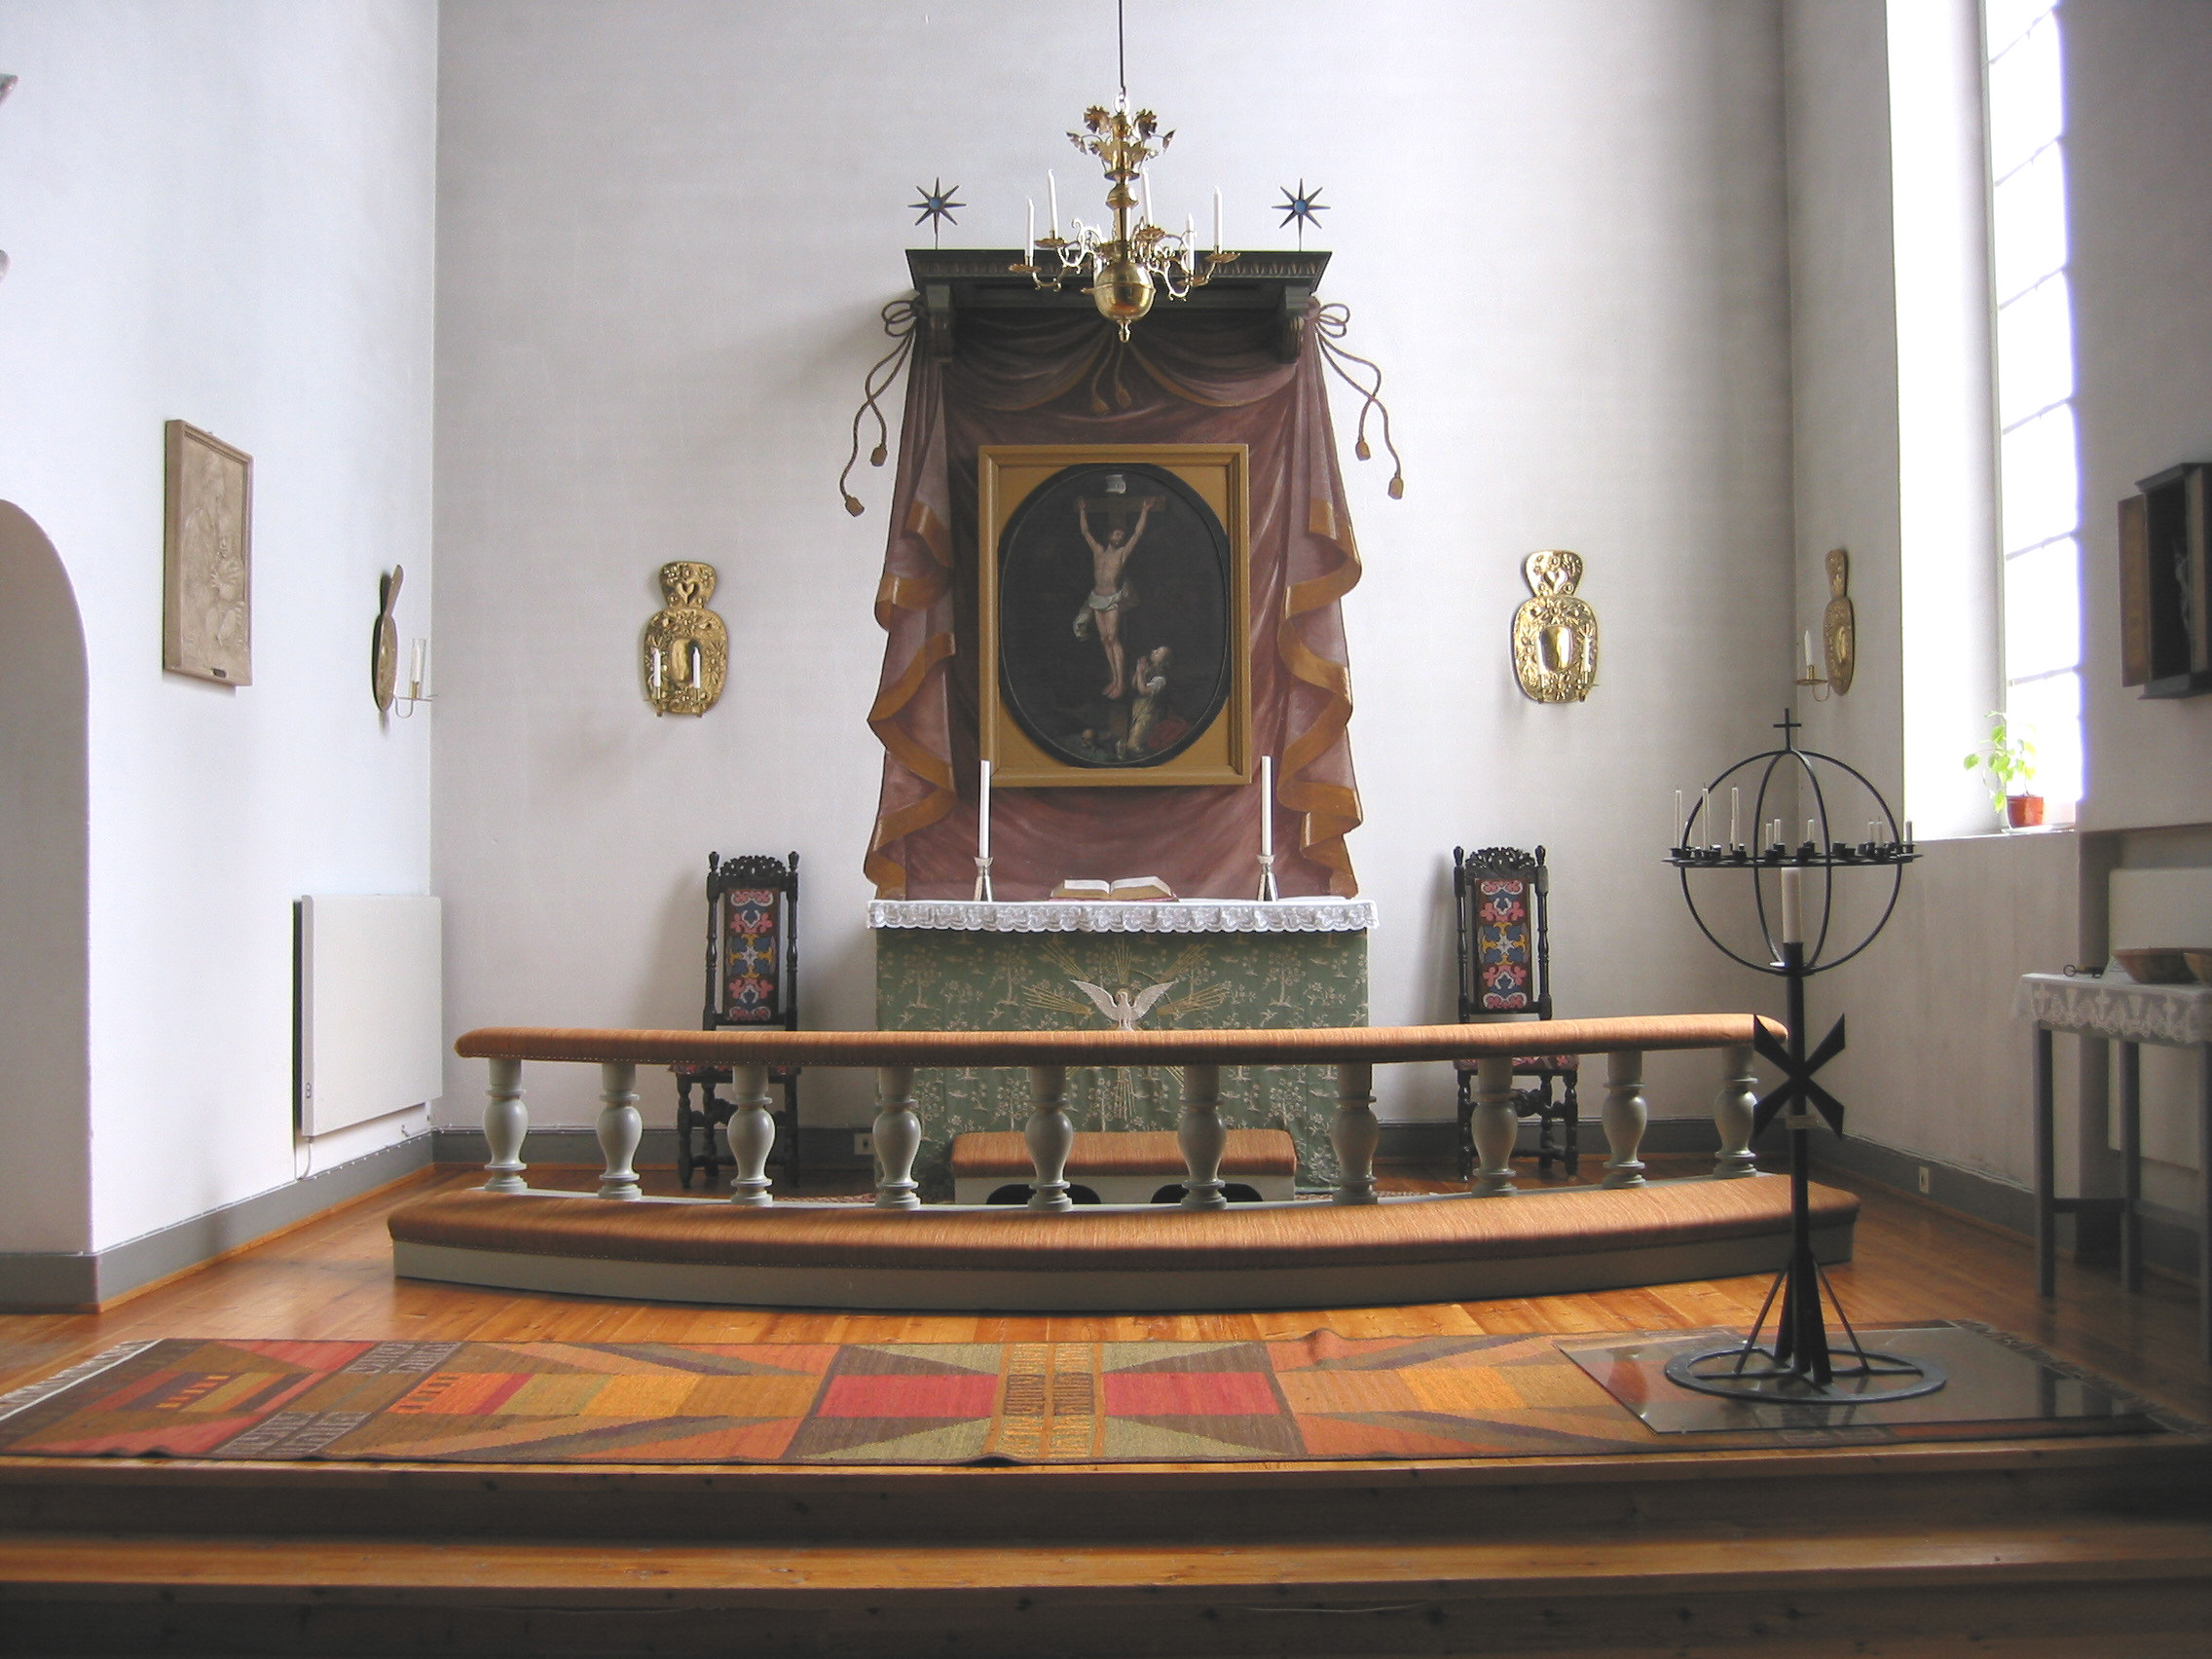 Funäsdalens kyrka, interiör, kyrkorummet, koret.

